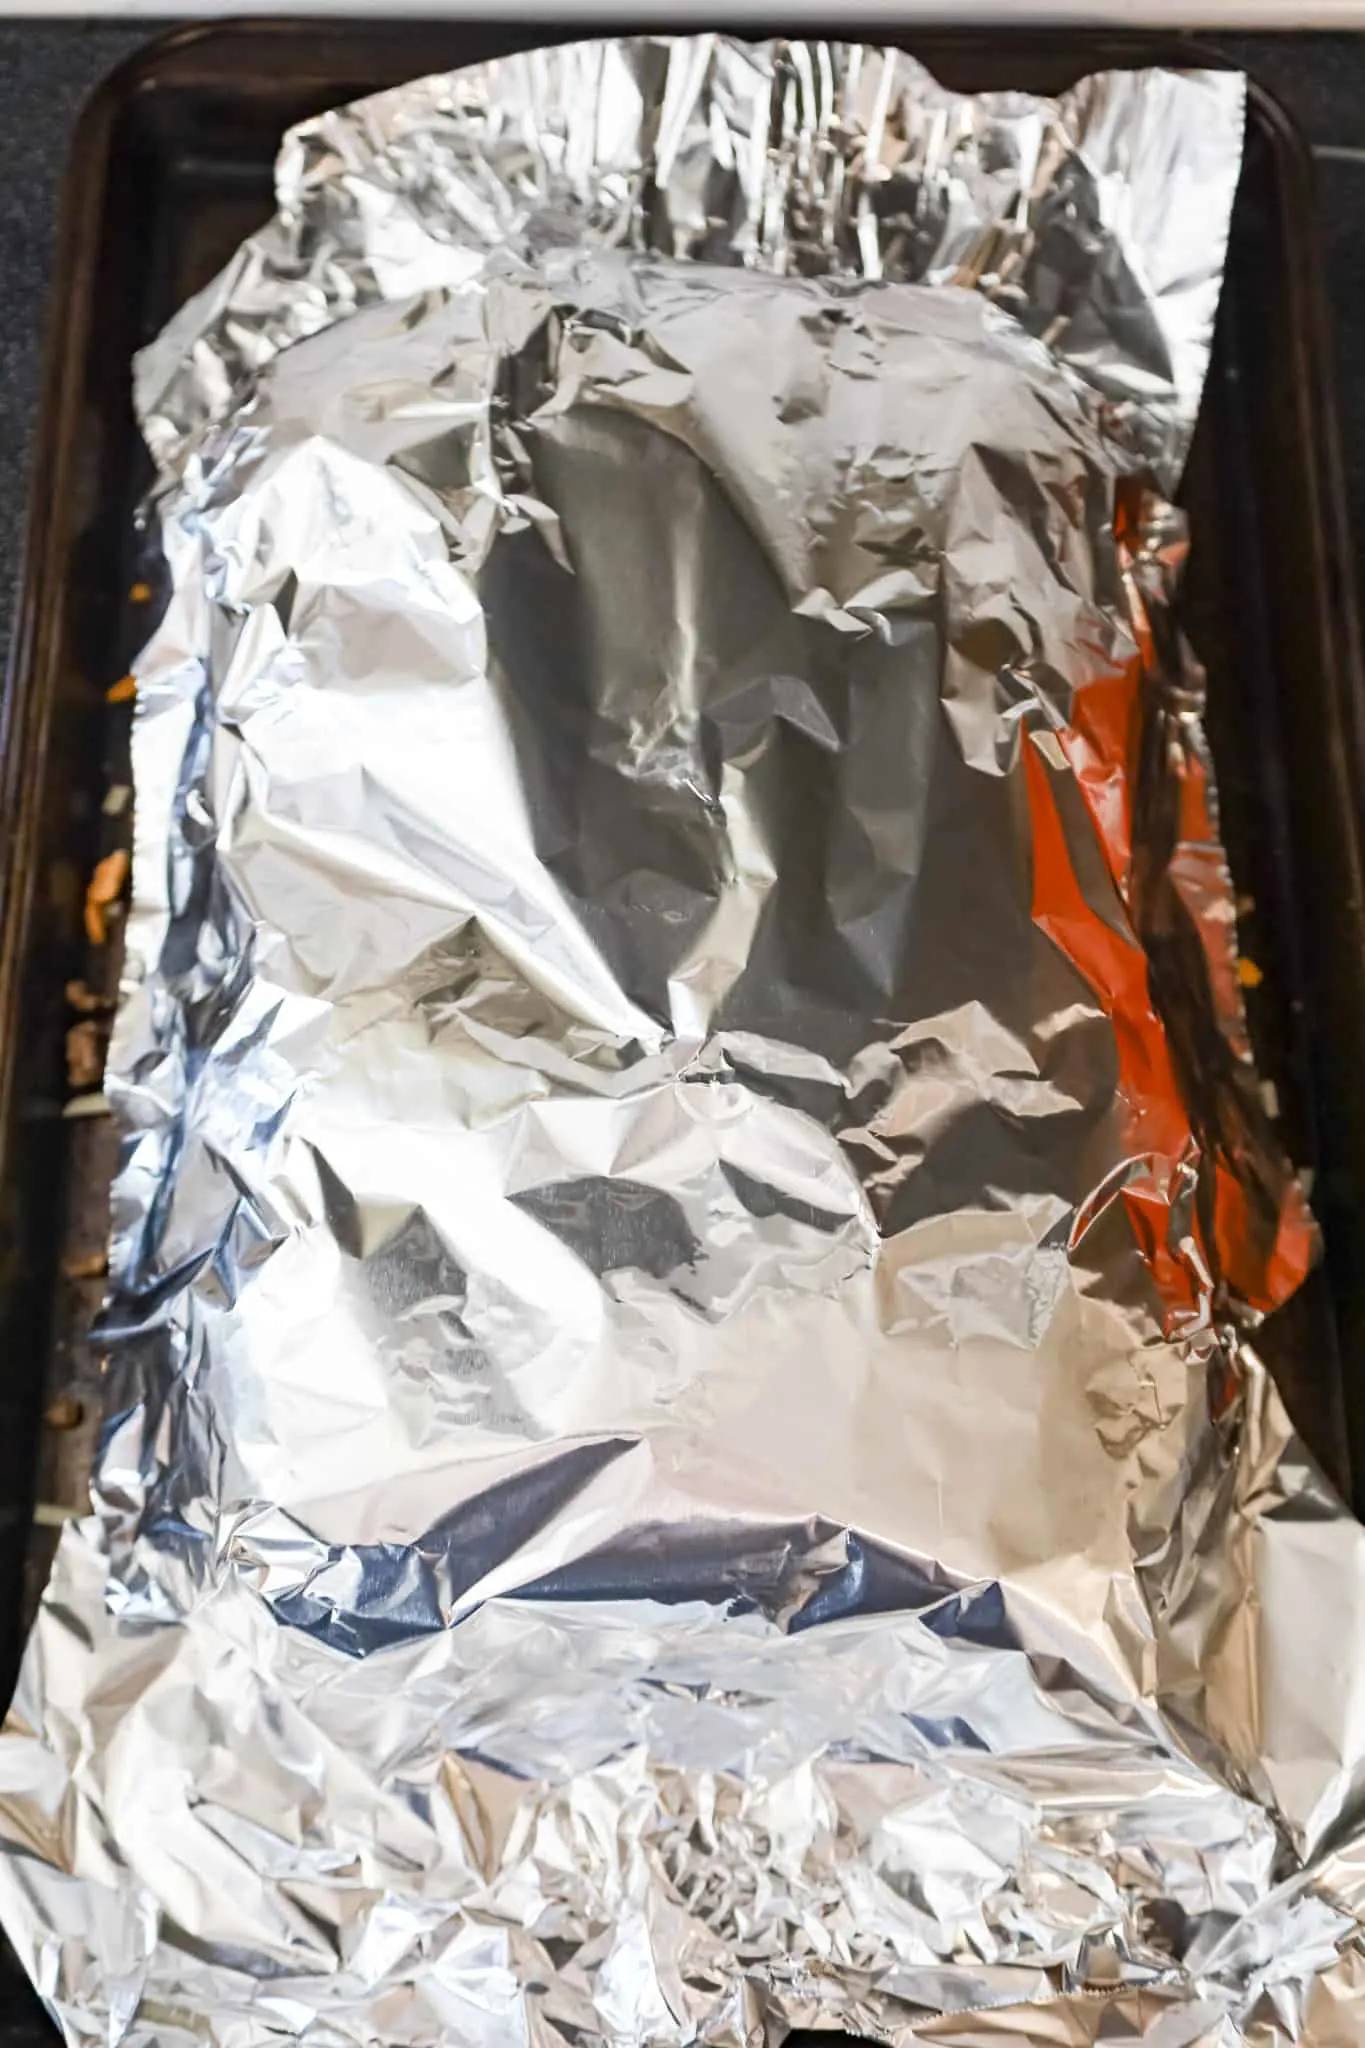 aluminum foil over sliders on a baking sheet